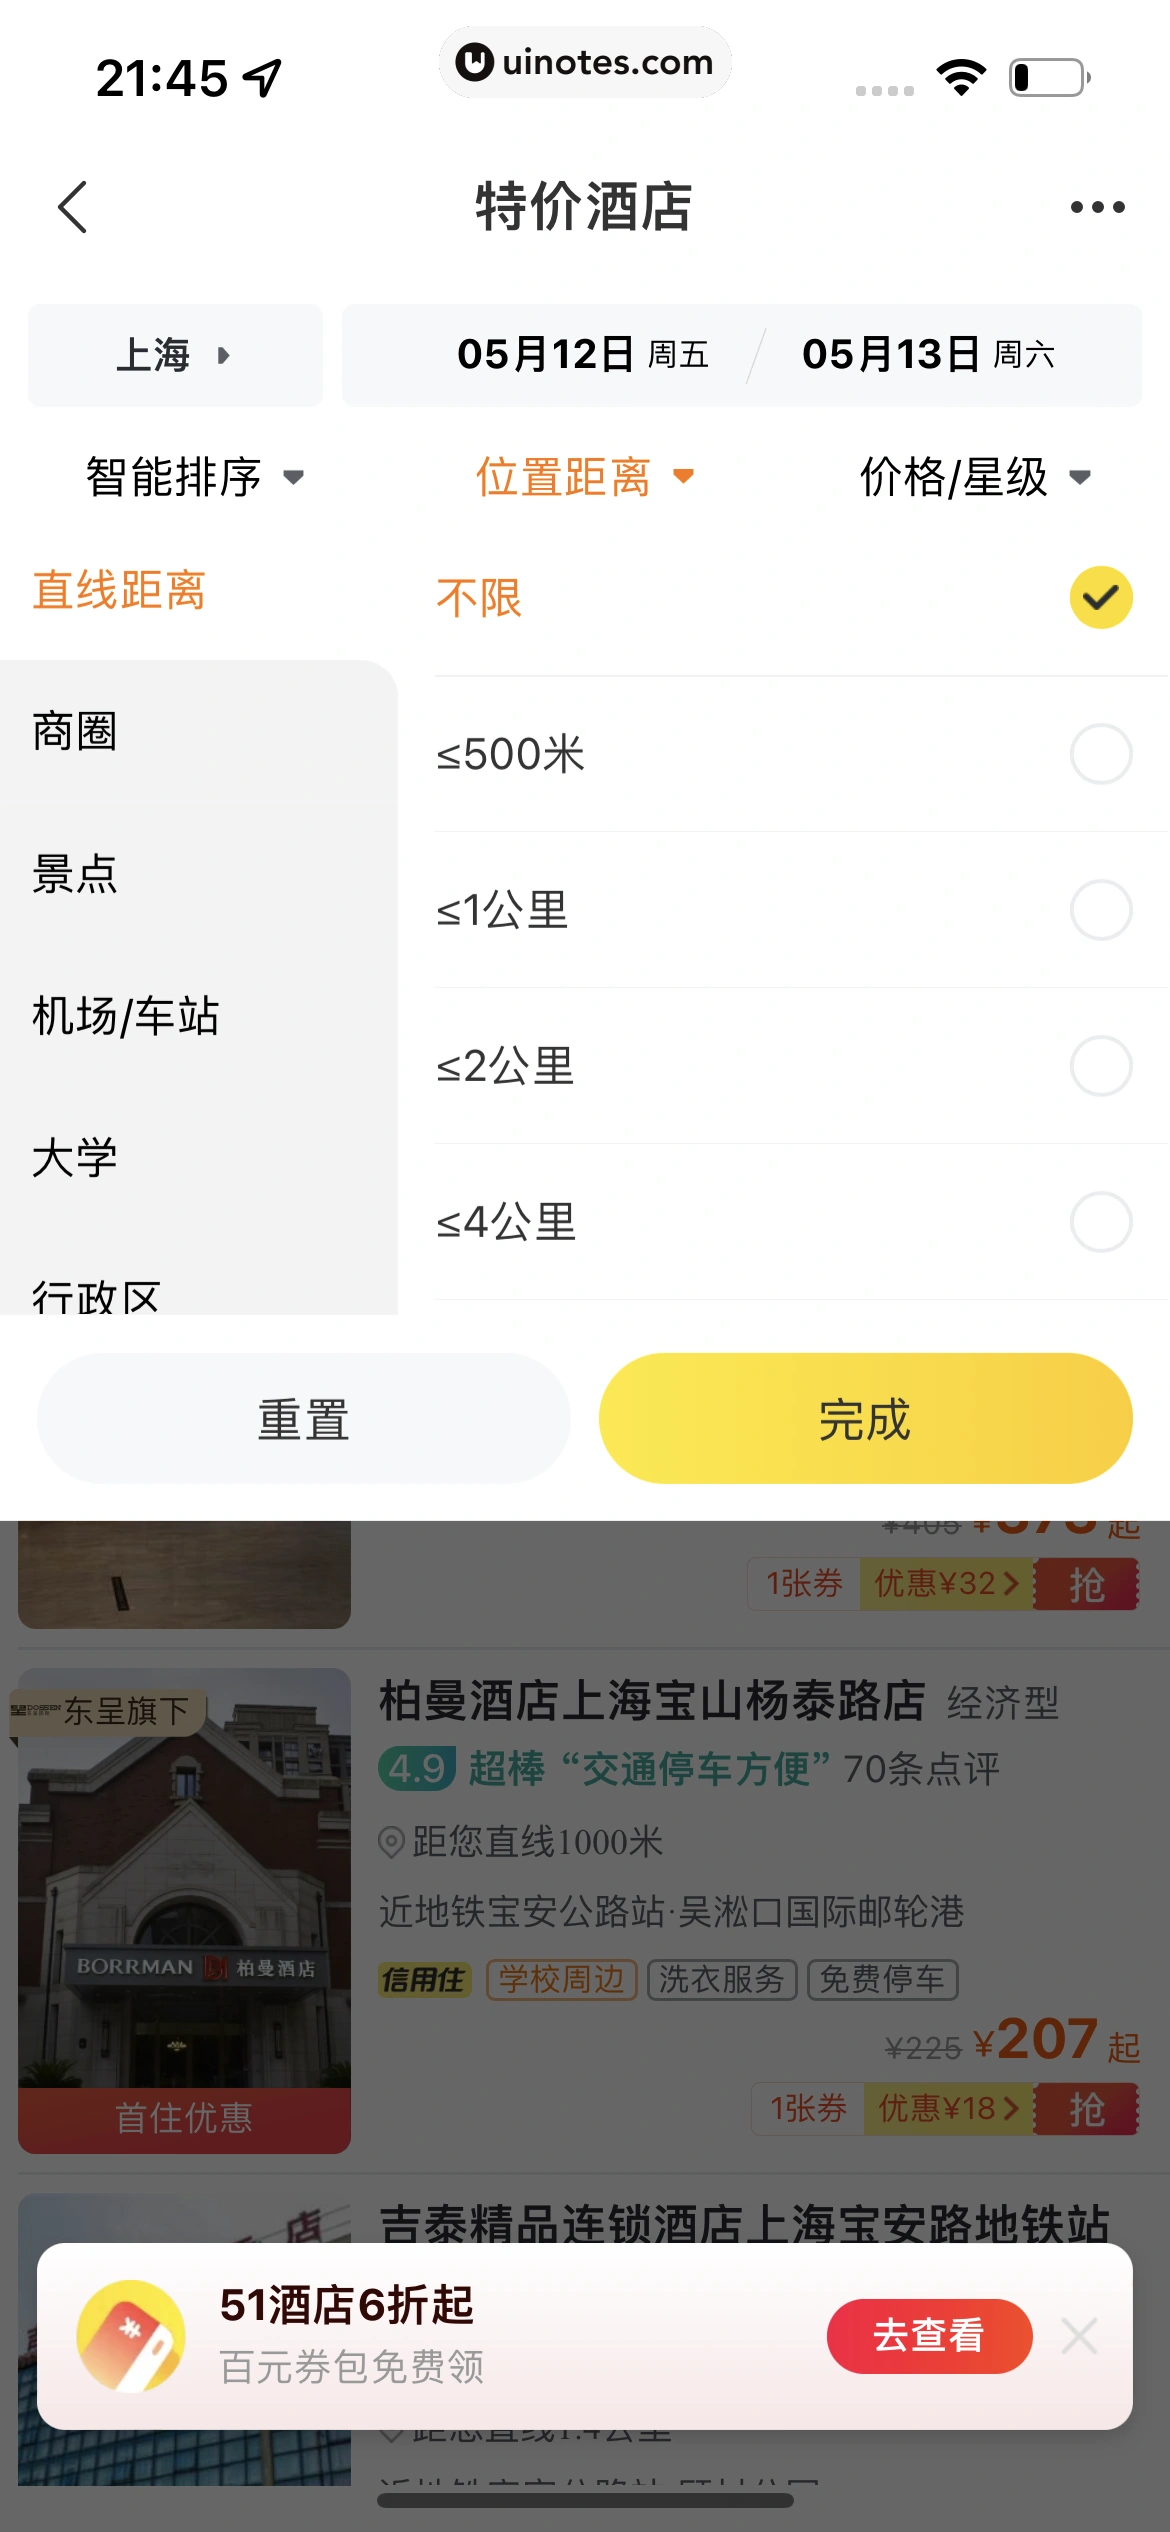 飞猪旅行 App 截图 246 - UI Notes